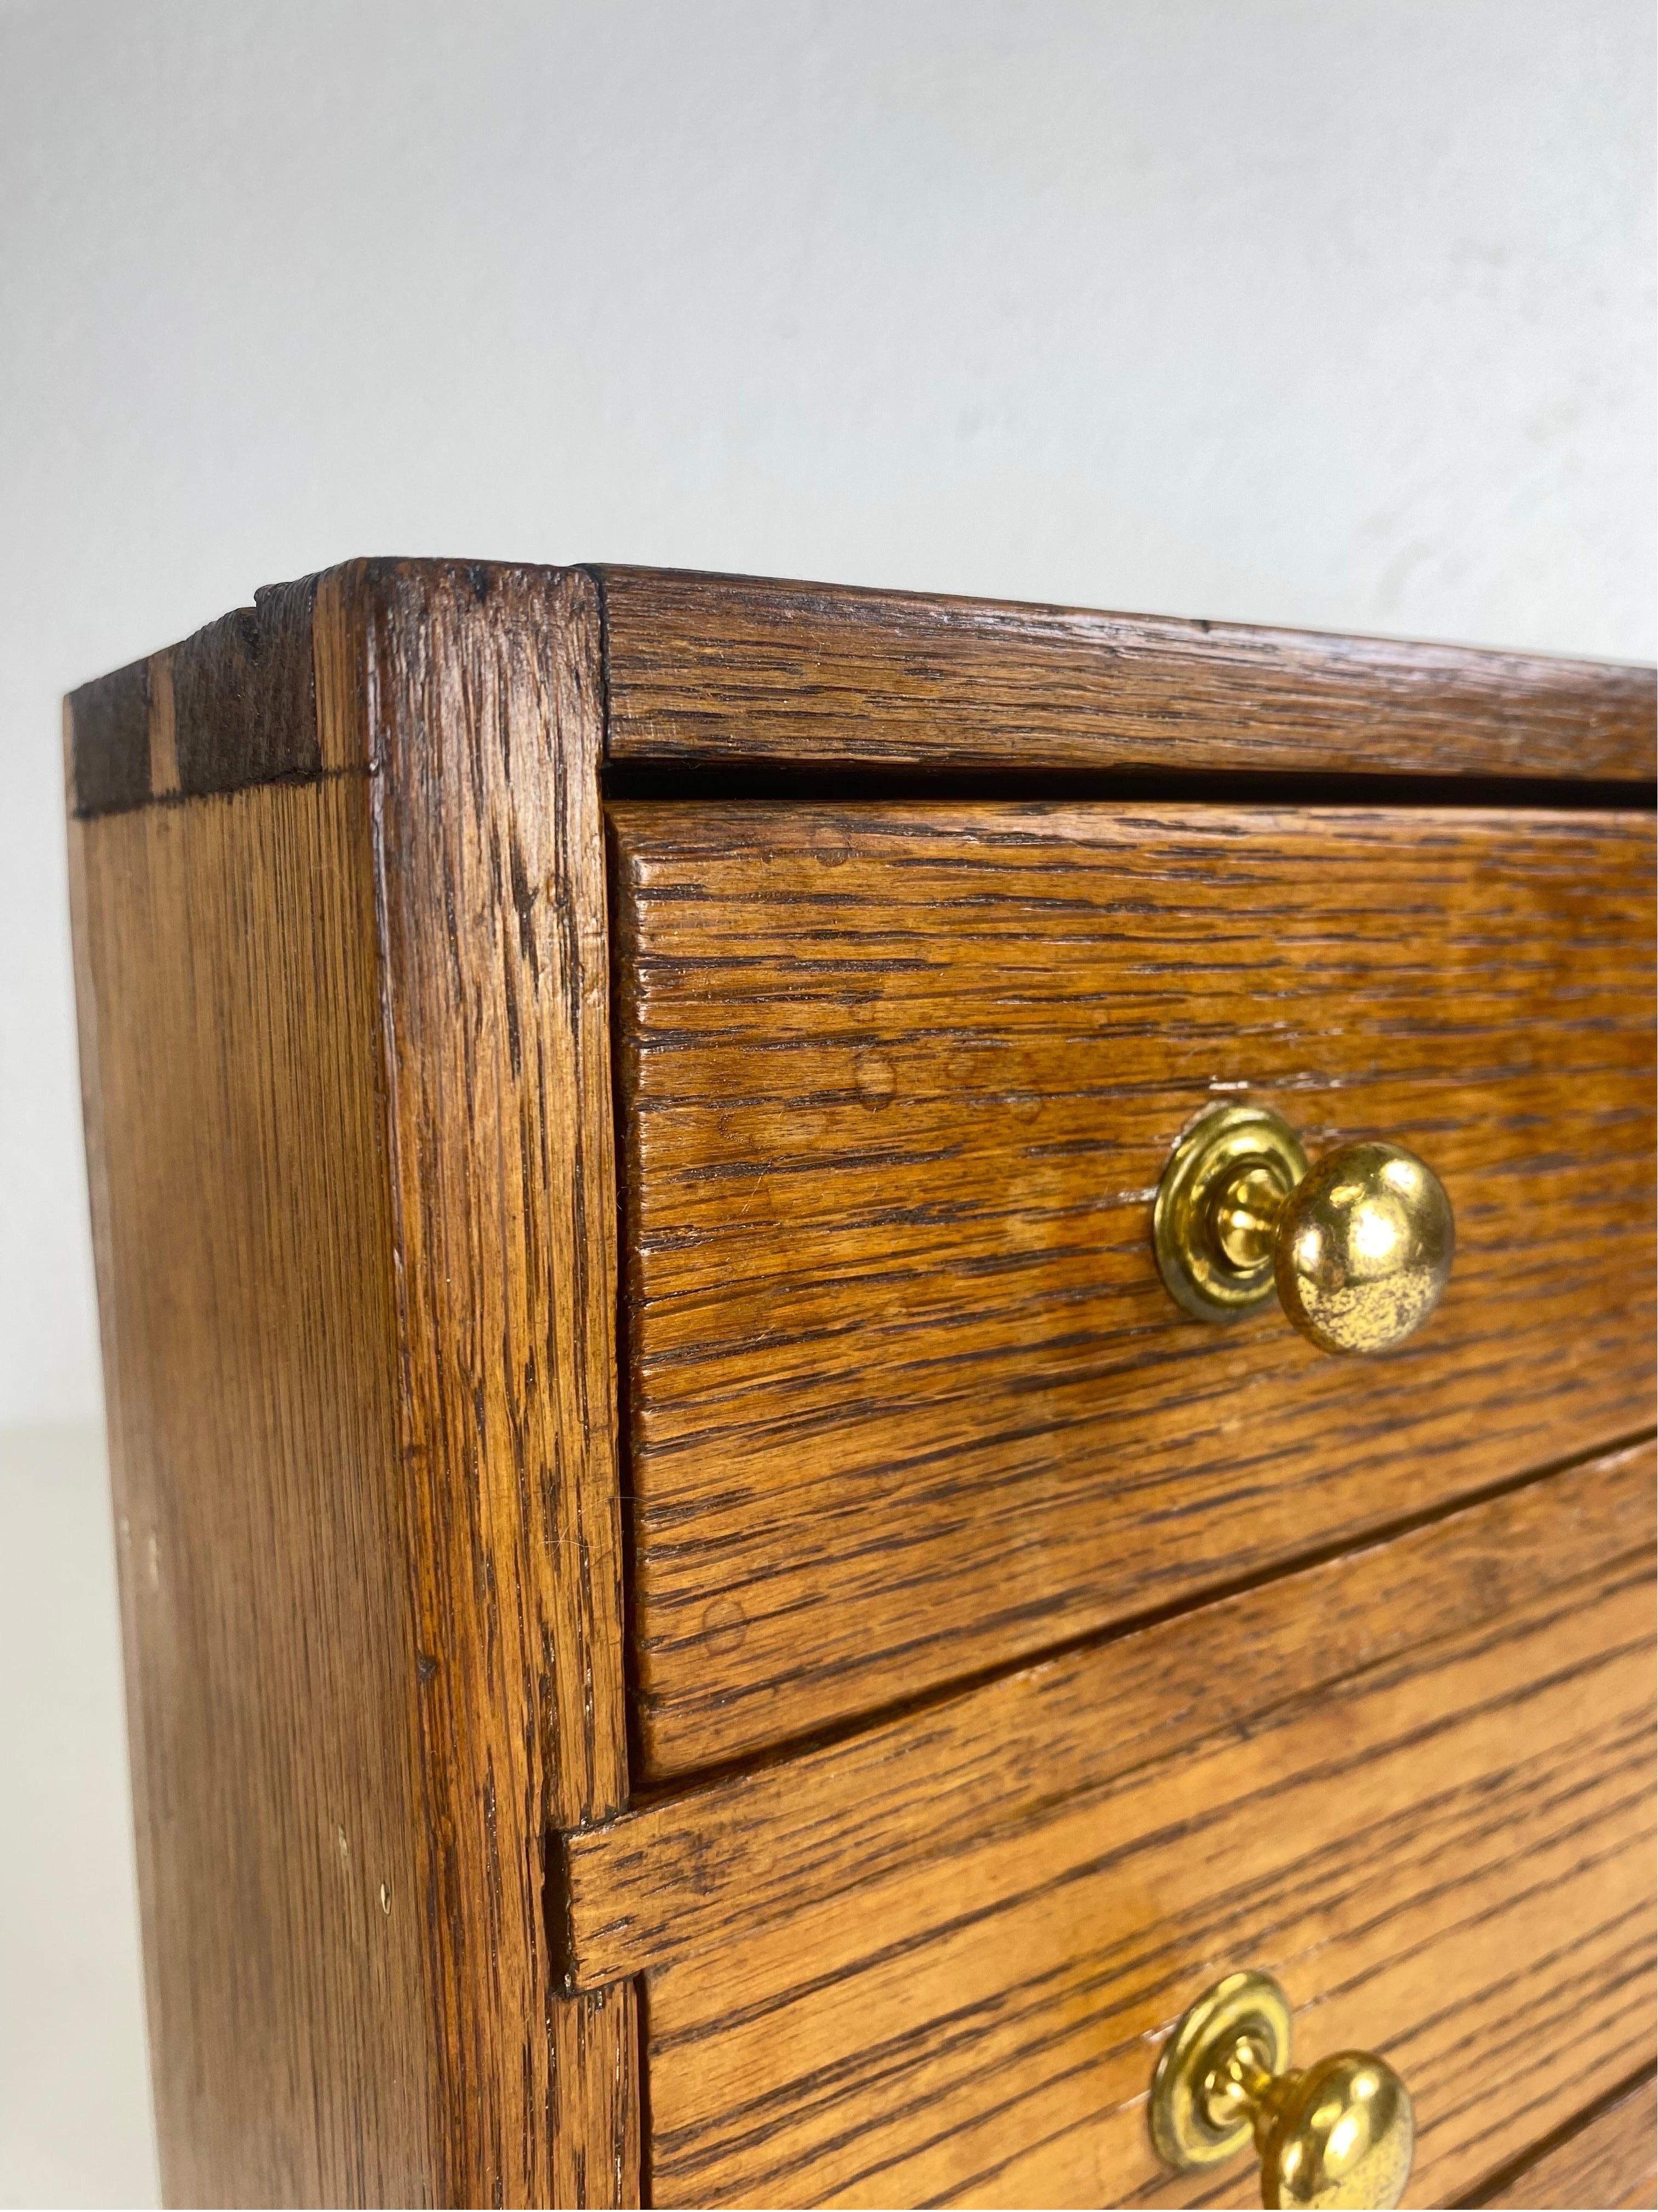 Il s'agit d'un ancien tiroir Chester miniature en chêne massif fait à la main. Cette commode a conservé sa quincaillerie d'origine en laiton massif. Cette pièce fabriquée à la main présente des queues d'aronde sur le dessus de la commode, ainsi qu'à